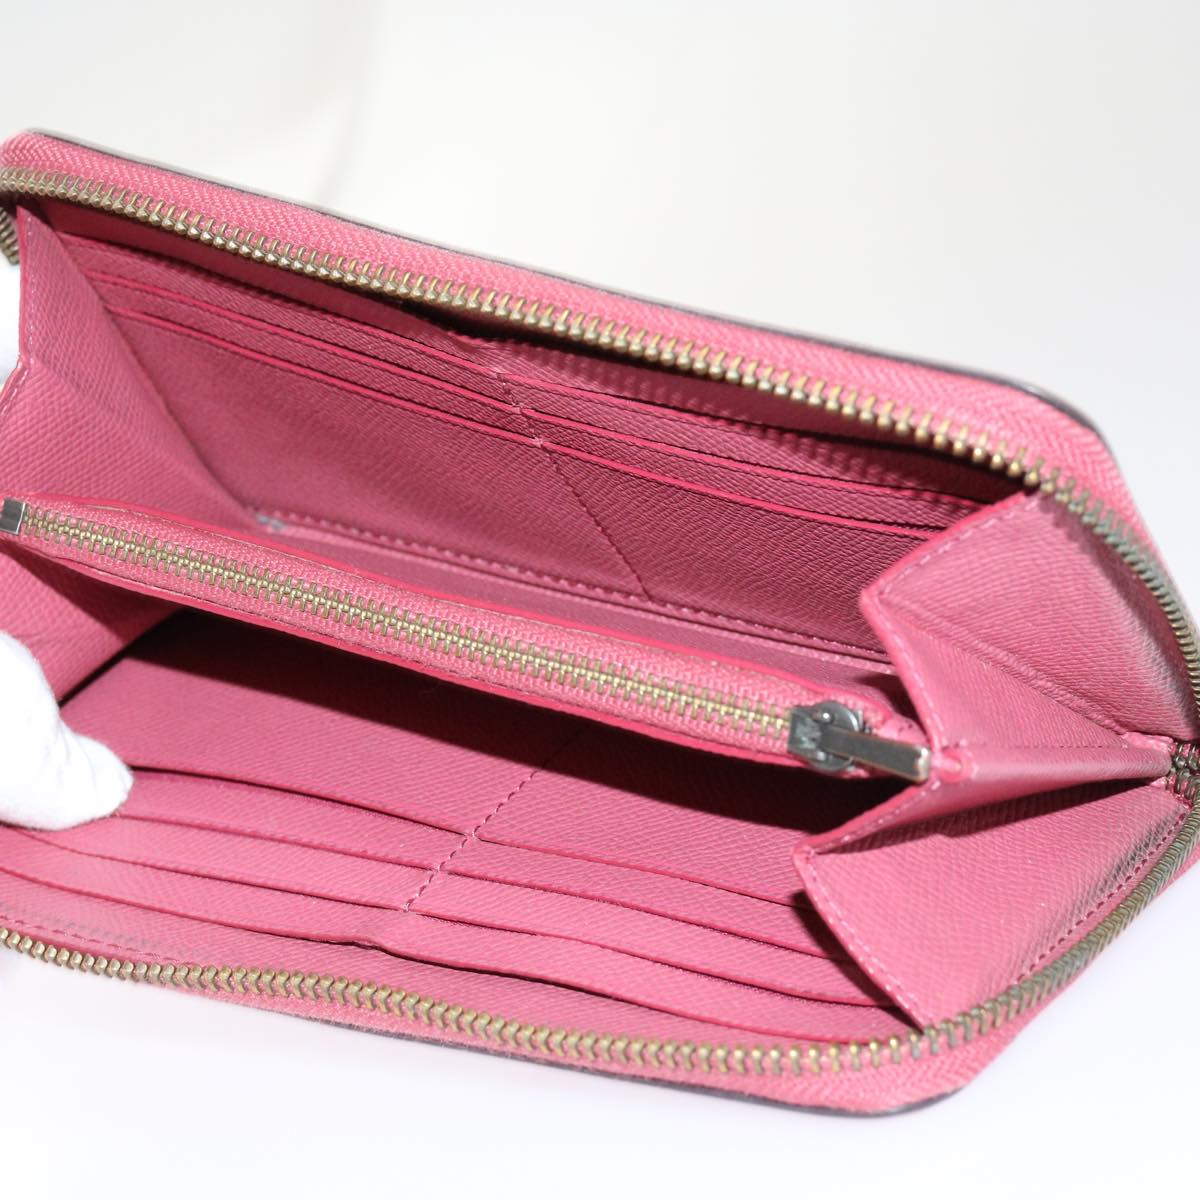 Coach Signature Wallet PVC Leather Canvas 12Set Beige Brown pink Auth am5566